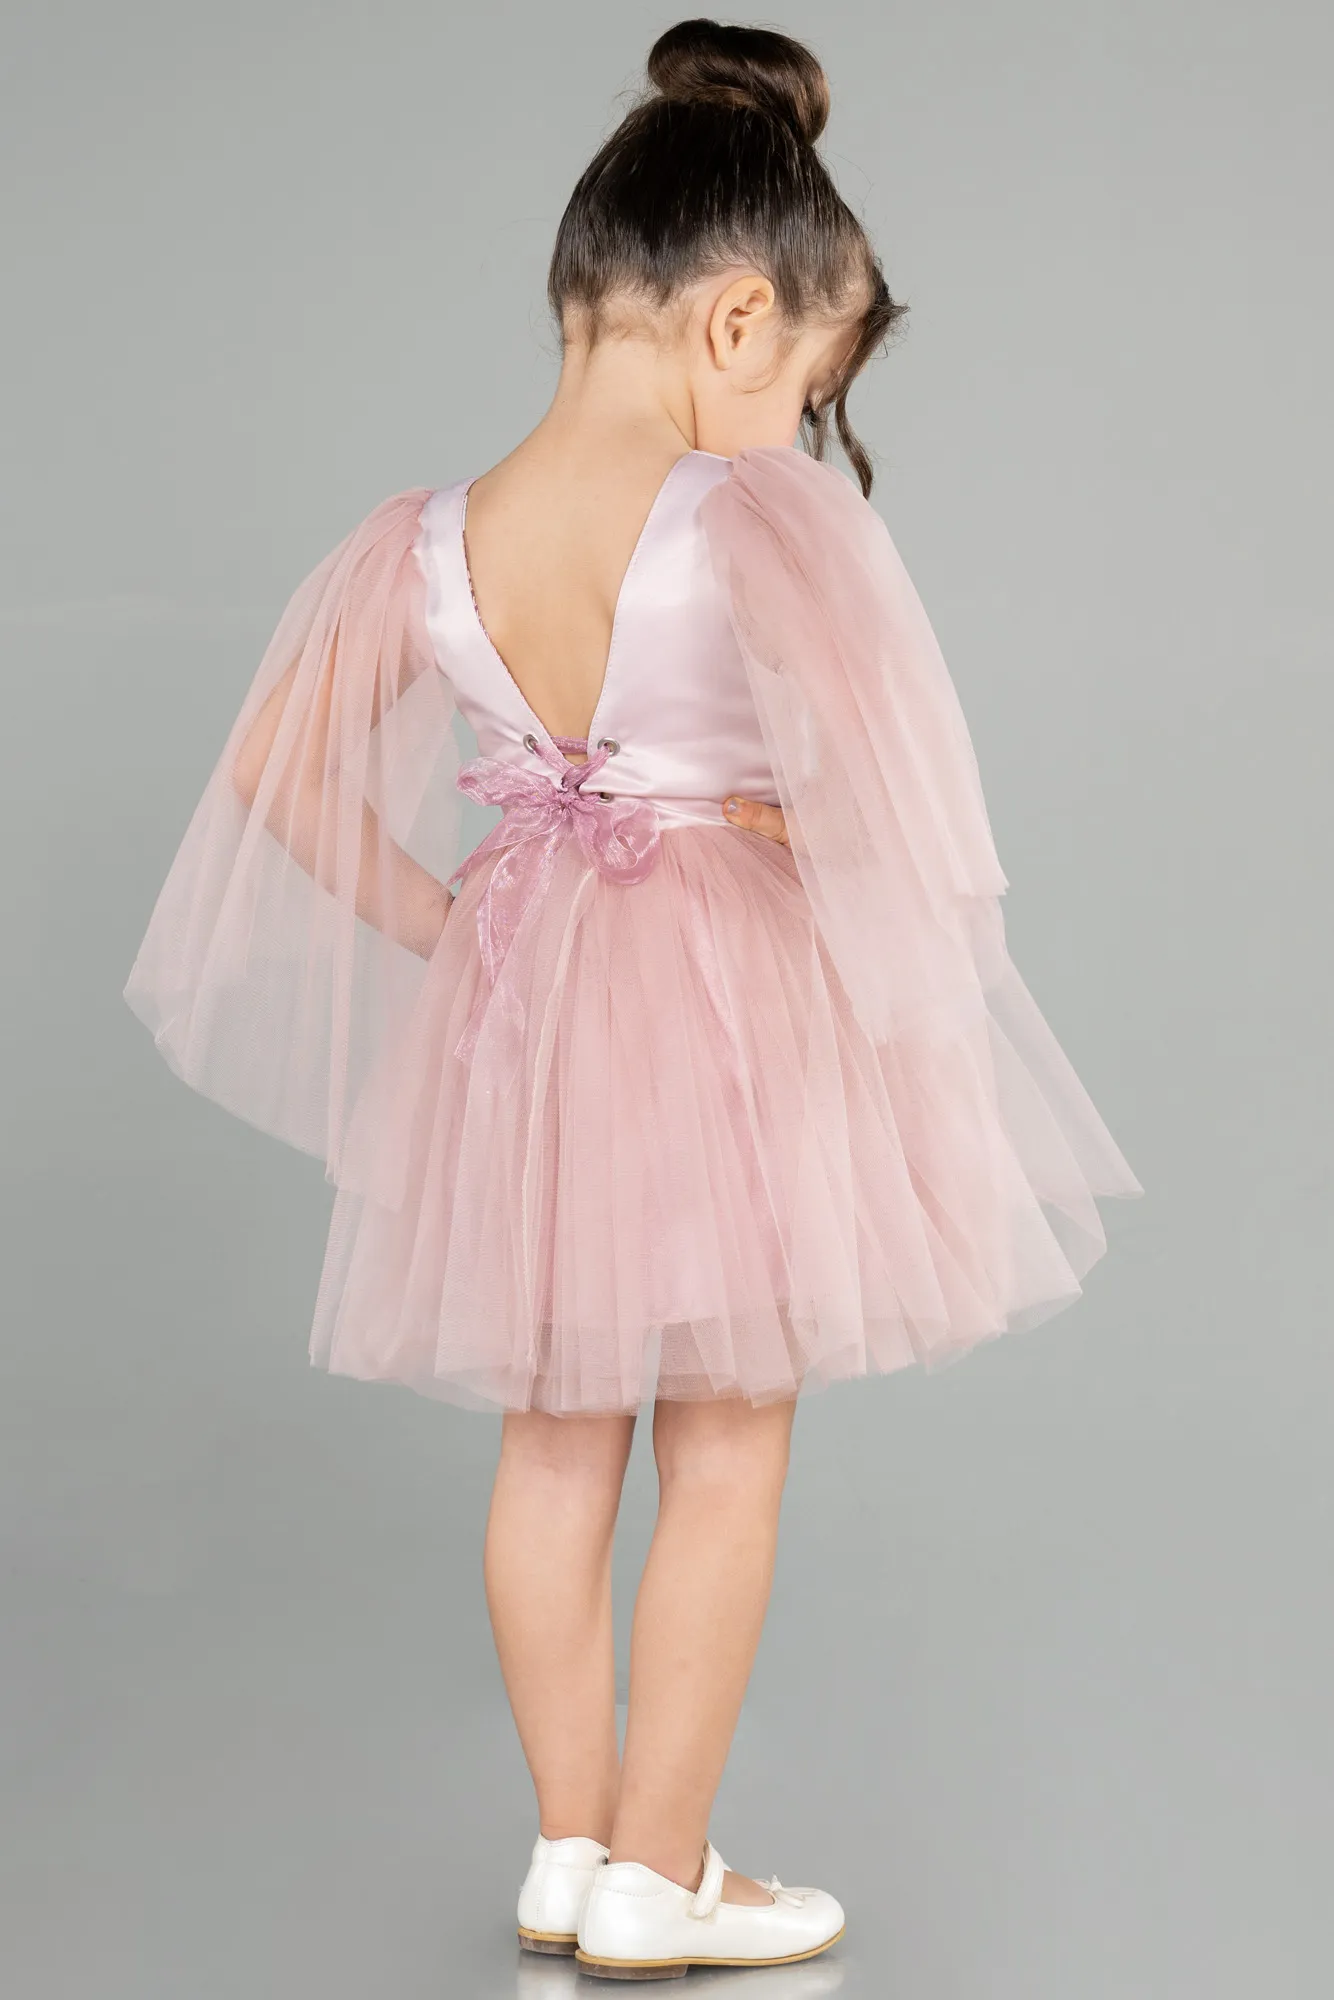 Rose Colored-Short Girl Dress ABK1797